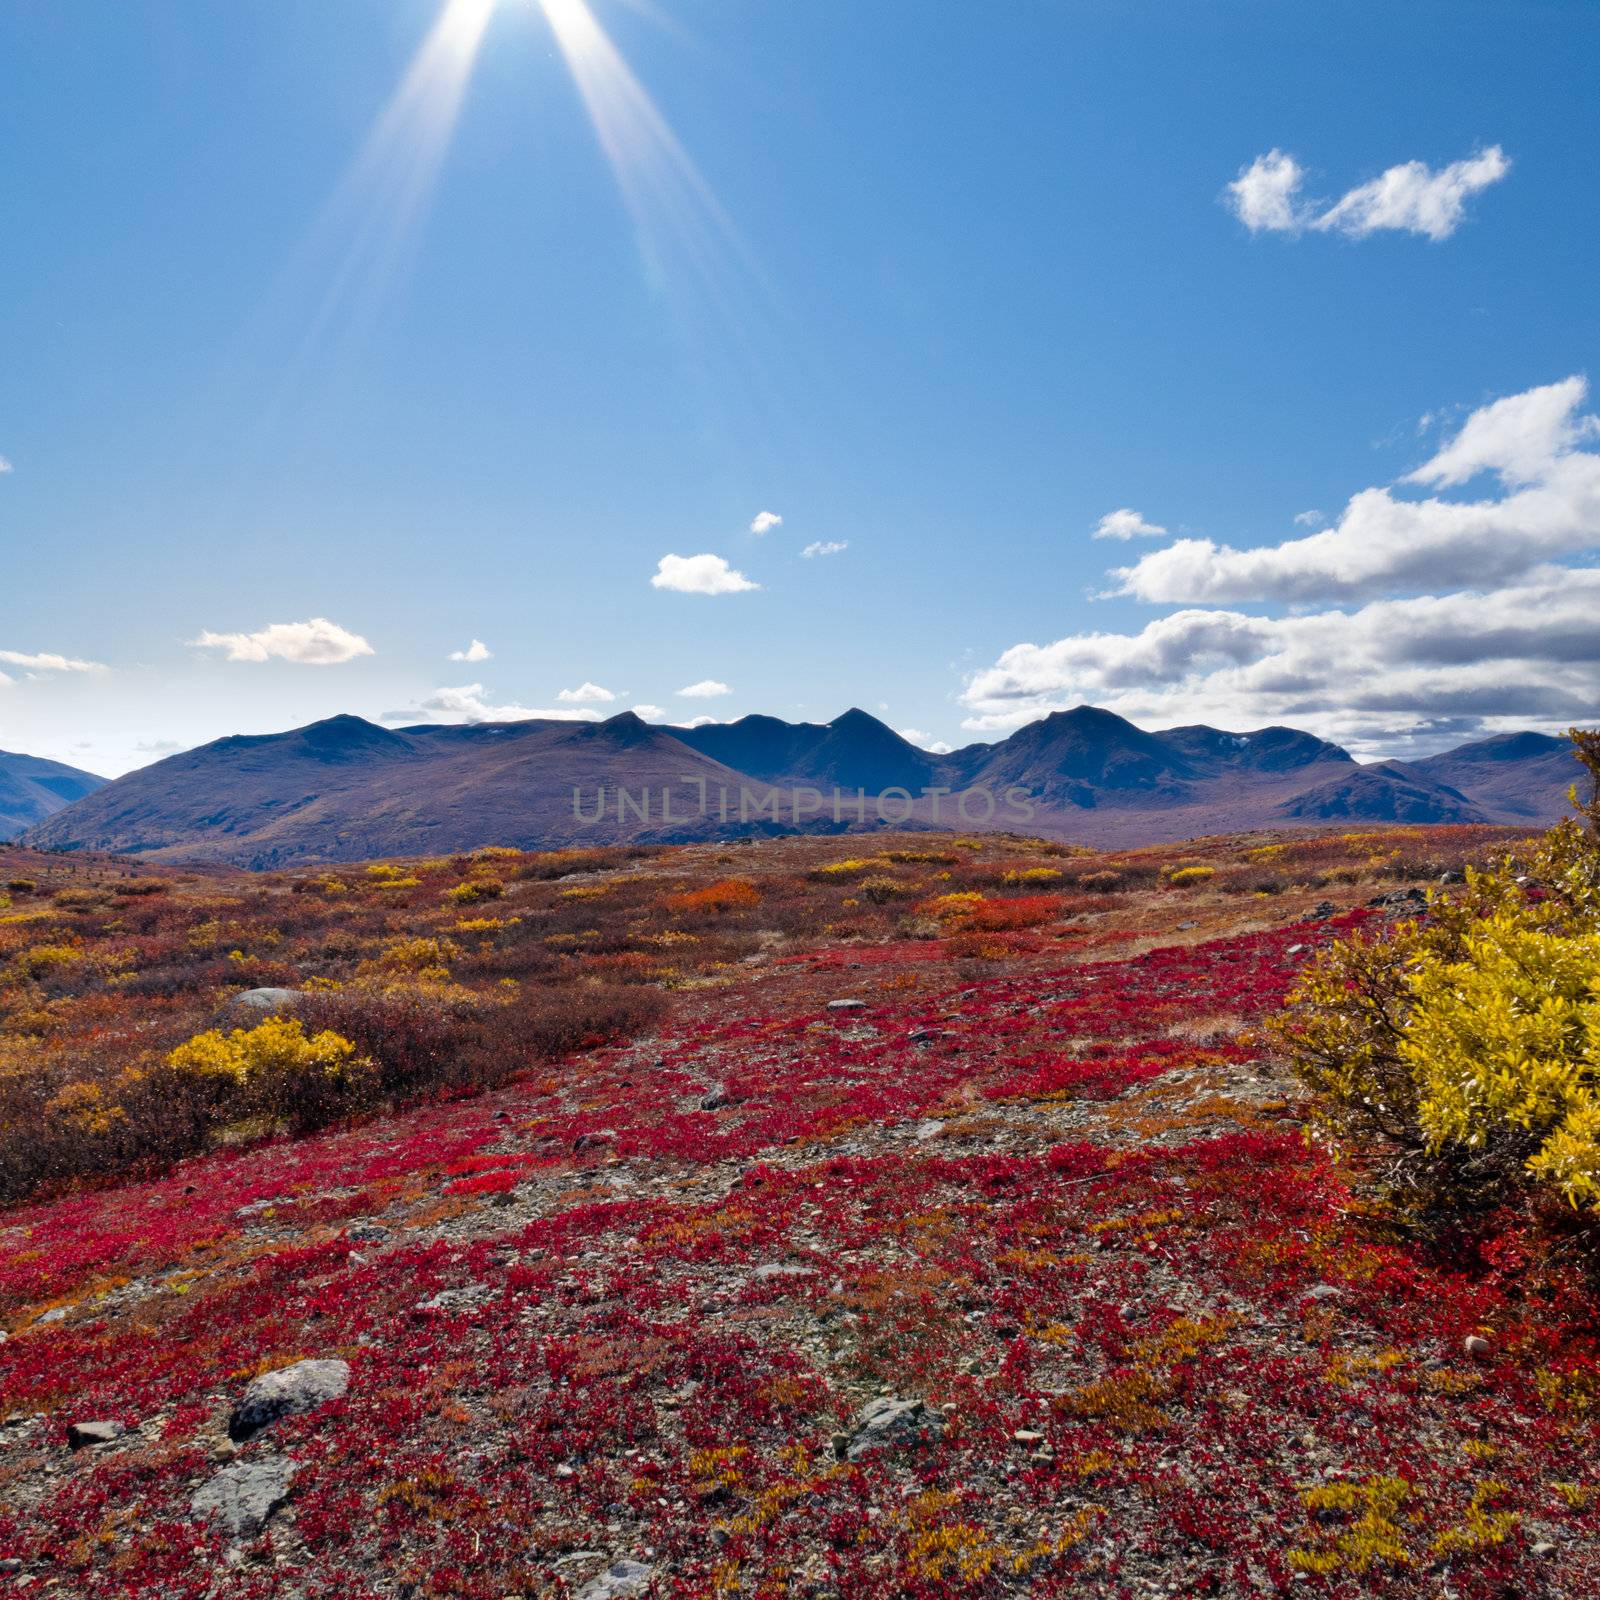 Fall-colored alpine tundra landscape in the Yukon Territory, Canada.